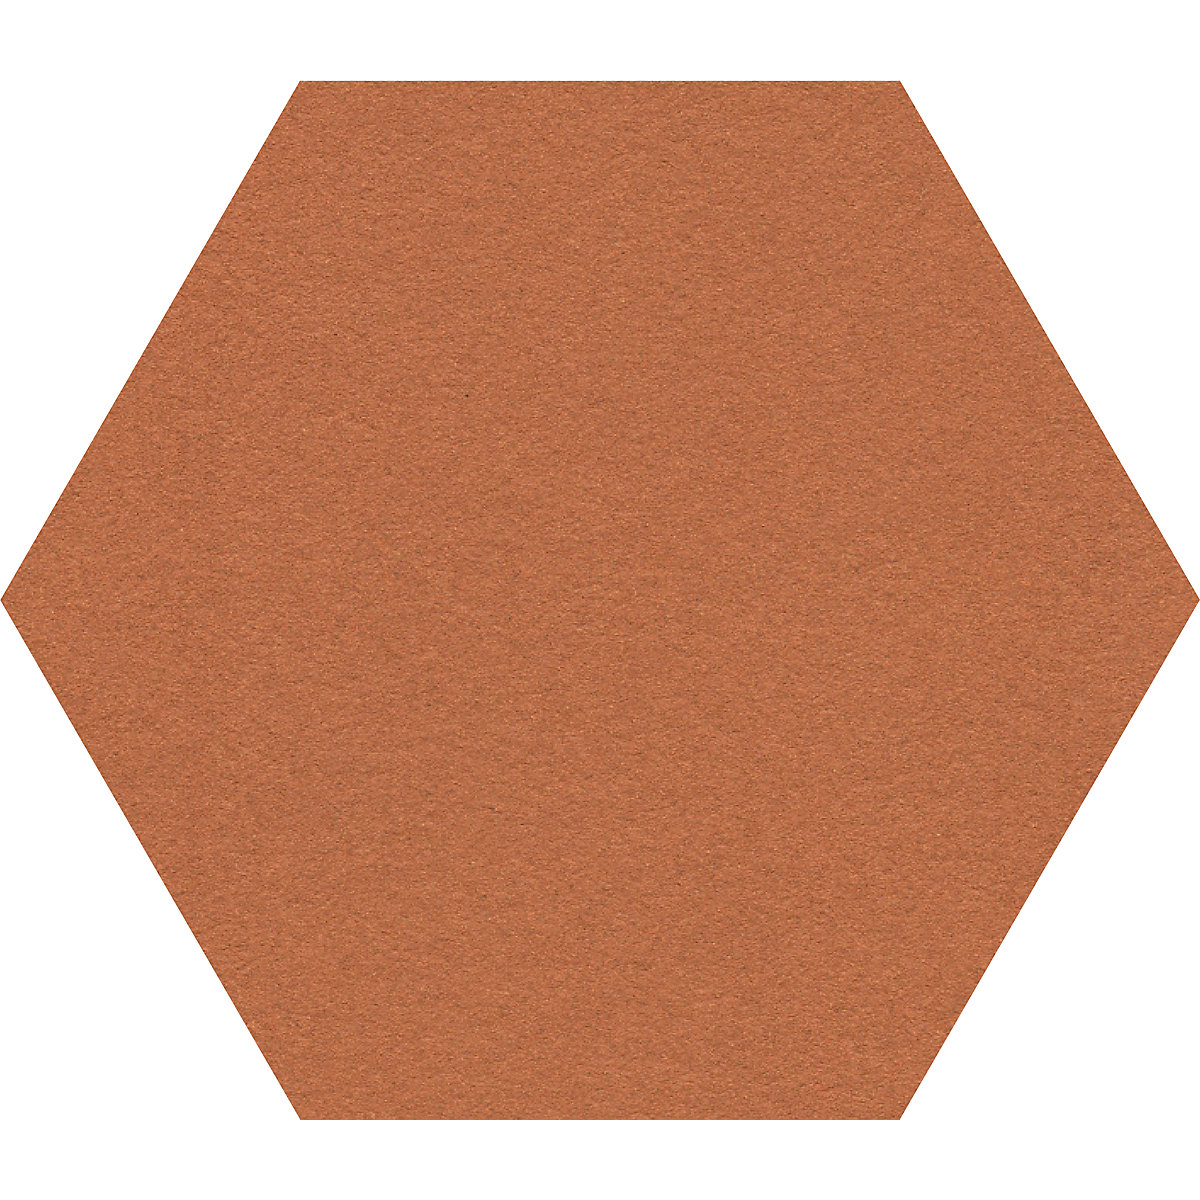 Tableau autocollant du liège Hexagon Decorative - Magasin de liège France